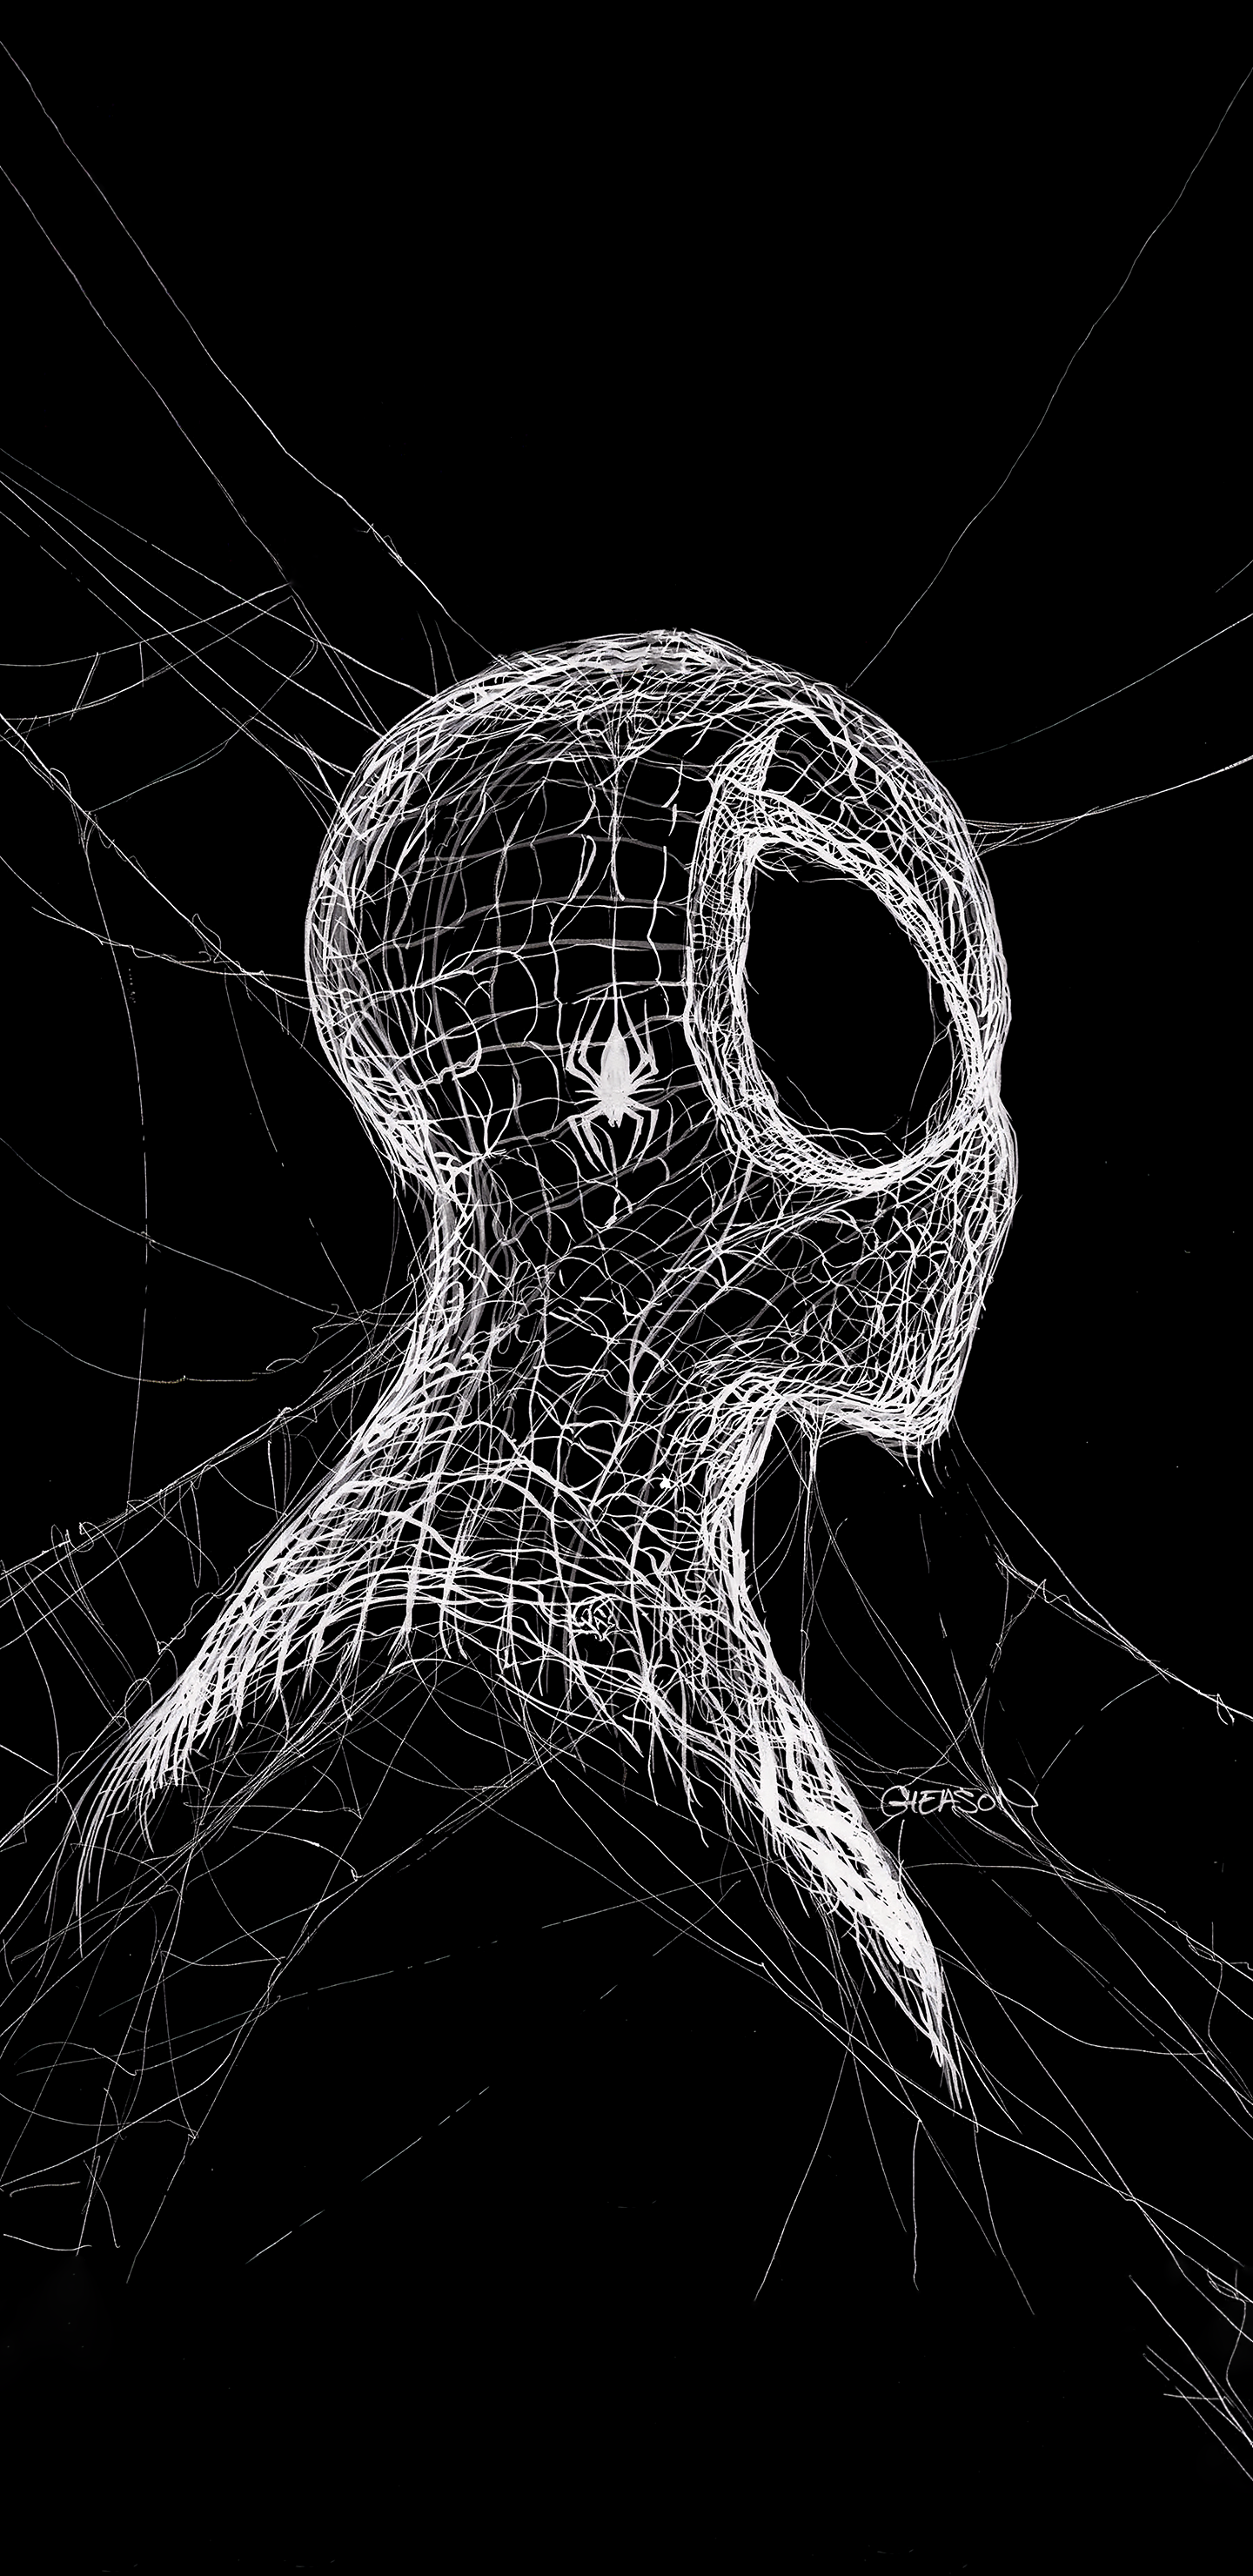 General 1440x2960 dark superhero Spider-Man portrait display spiderwebs